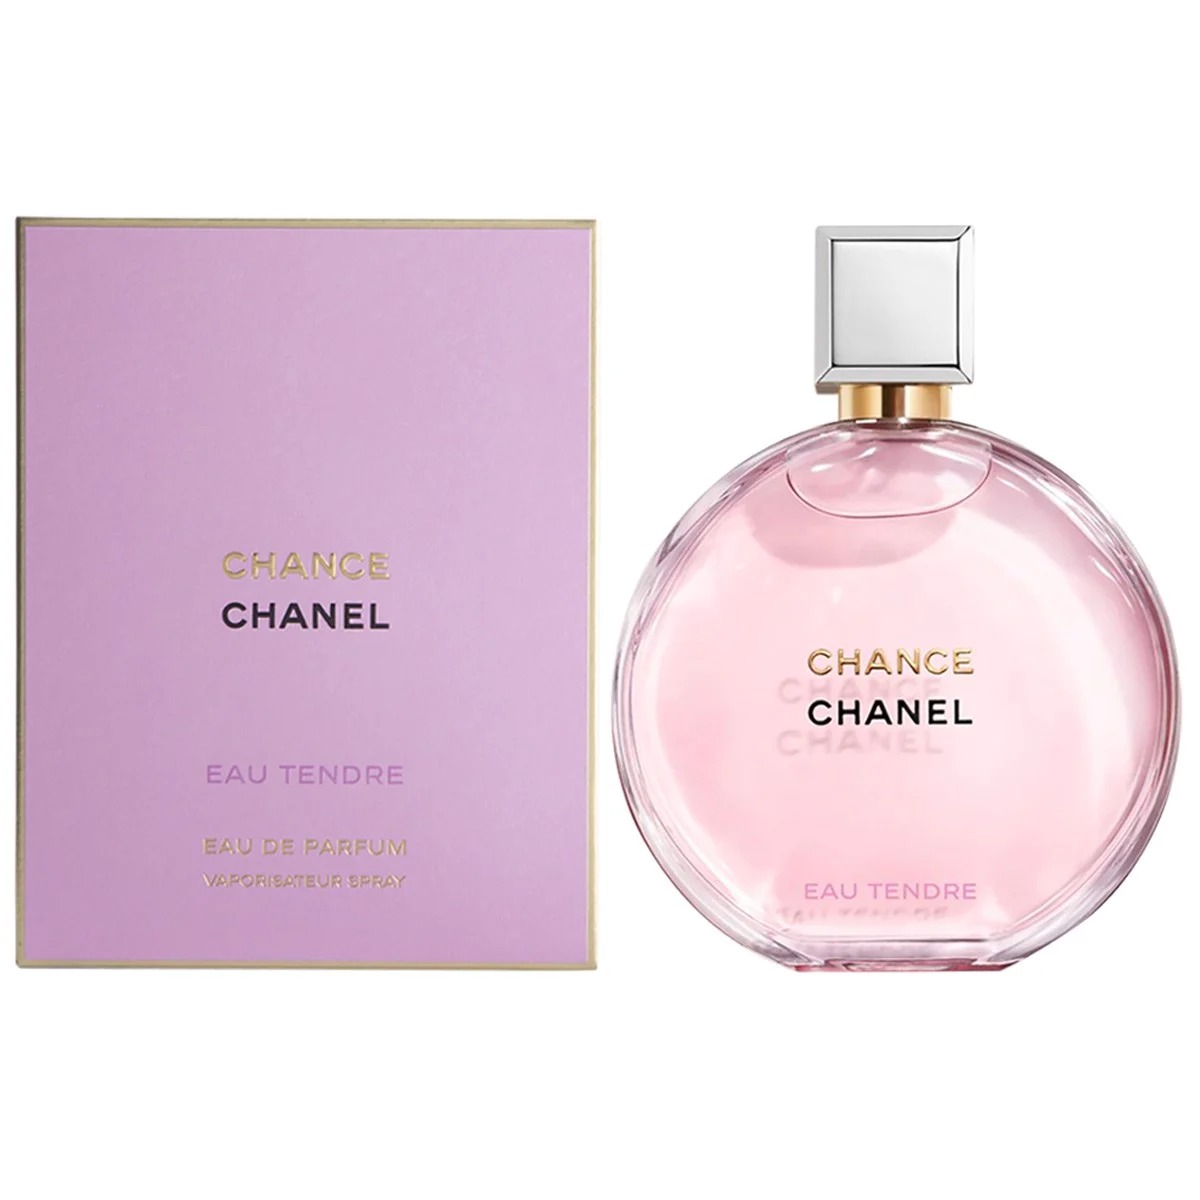 CHANCE Parfum  025 FL OZ  Fragrance  CHANEL